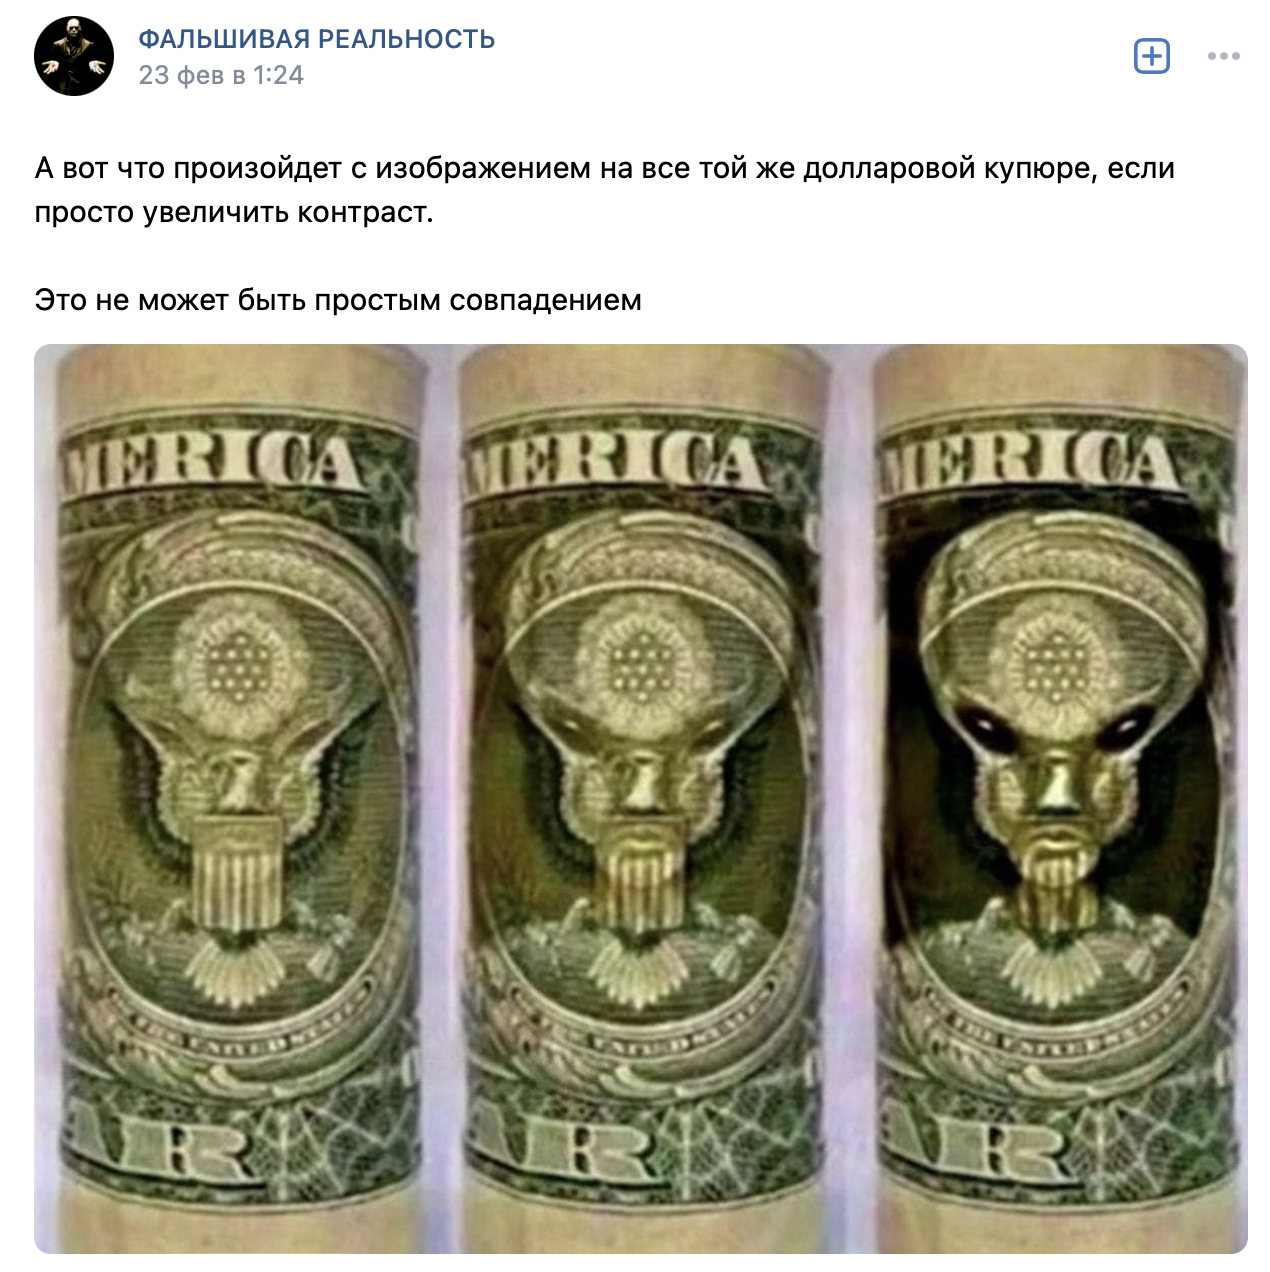 На долларовой купюре изображен инопланетянин